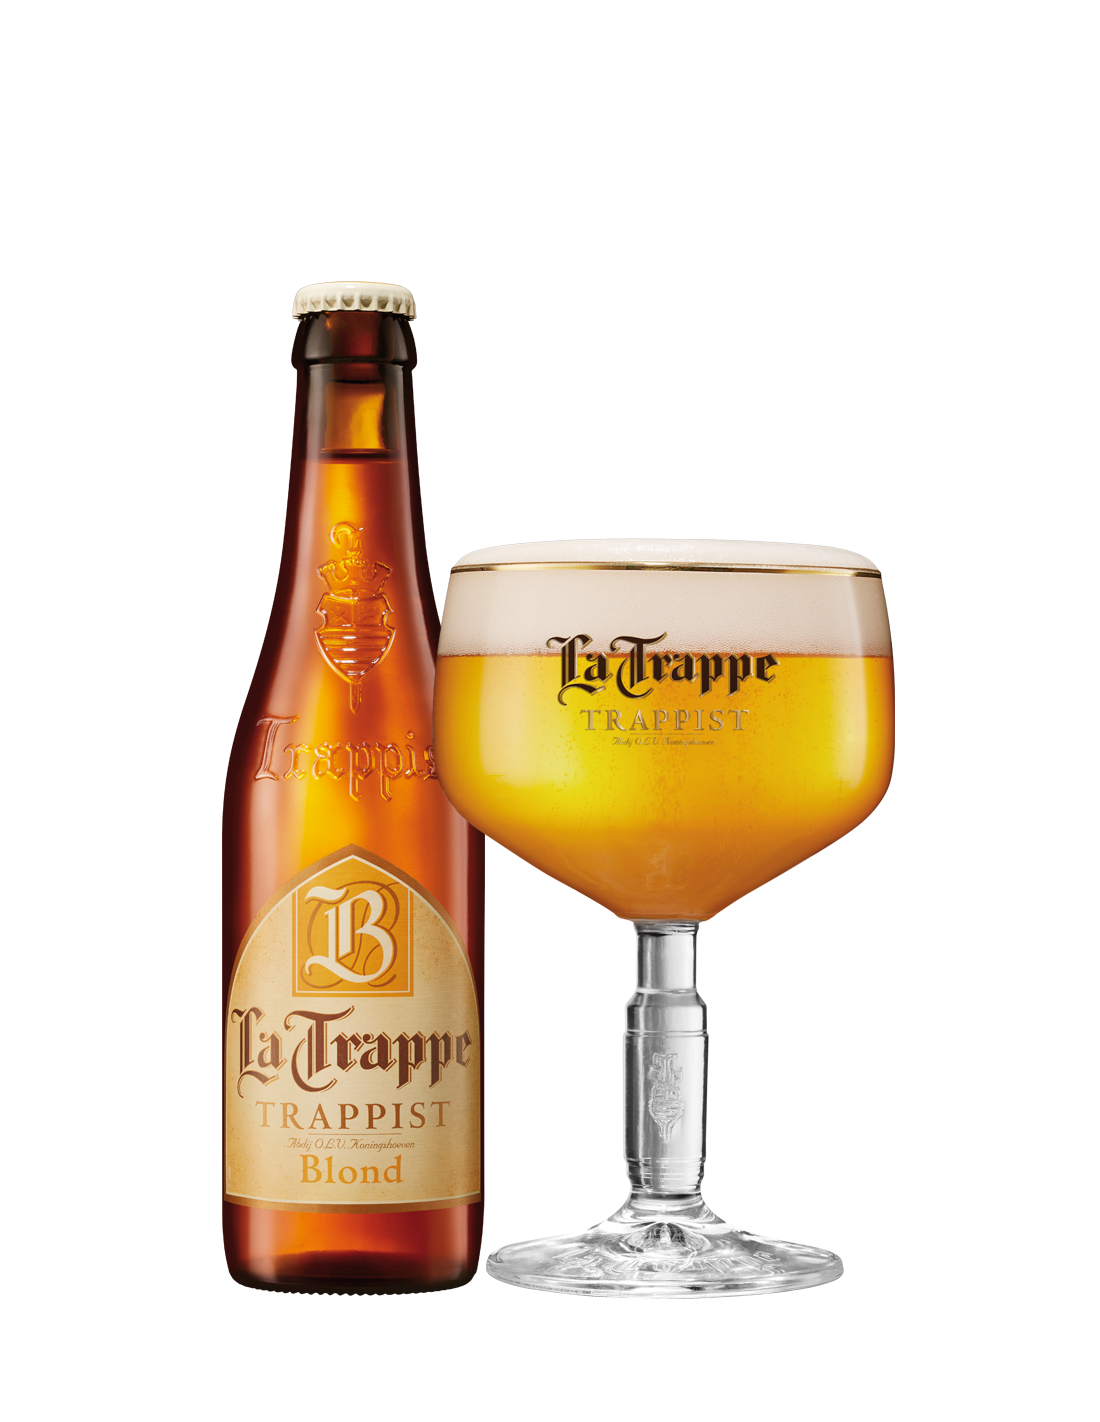 Bere blonda, filtrata La Trappe, 6.5% alc., 0.33L, Belgia